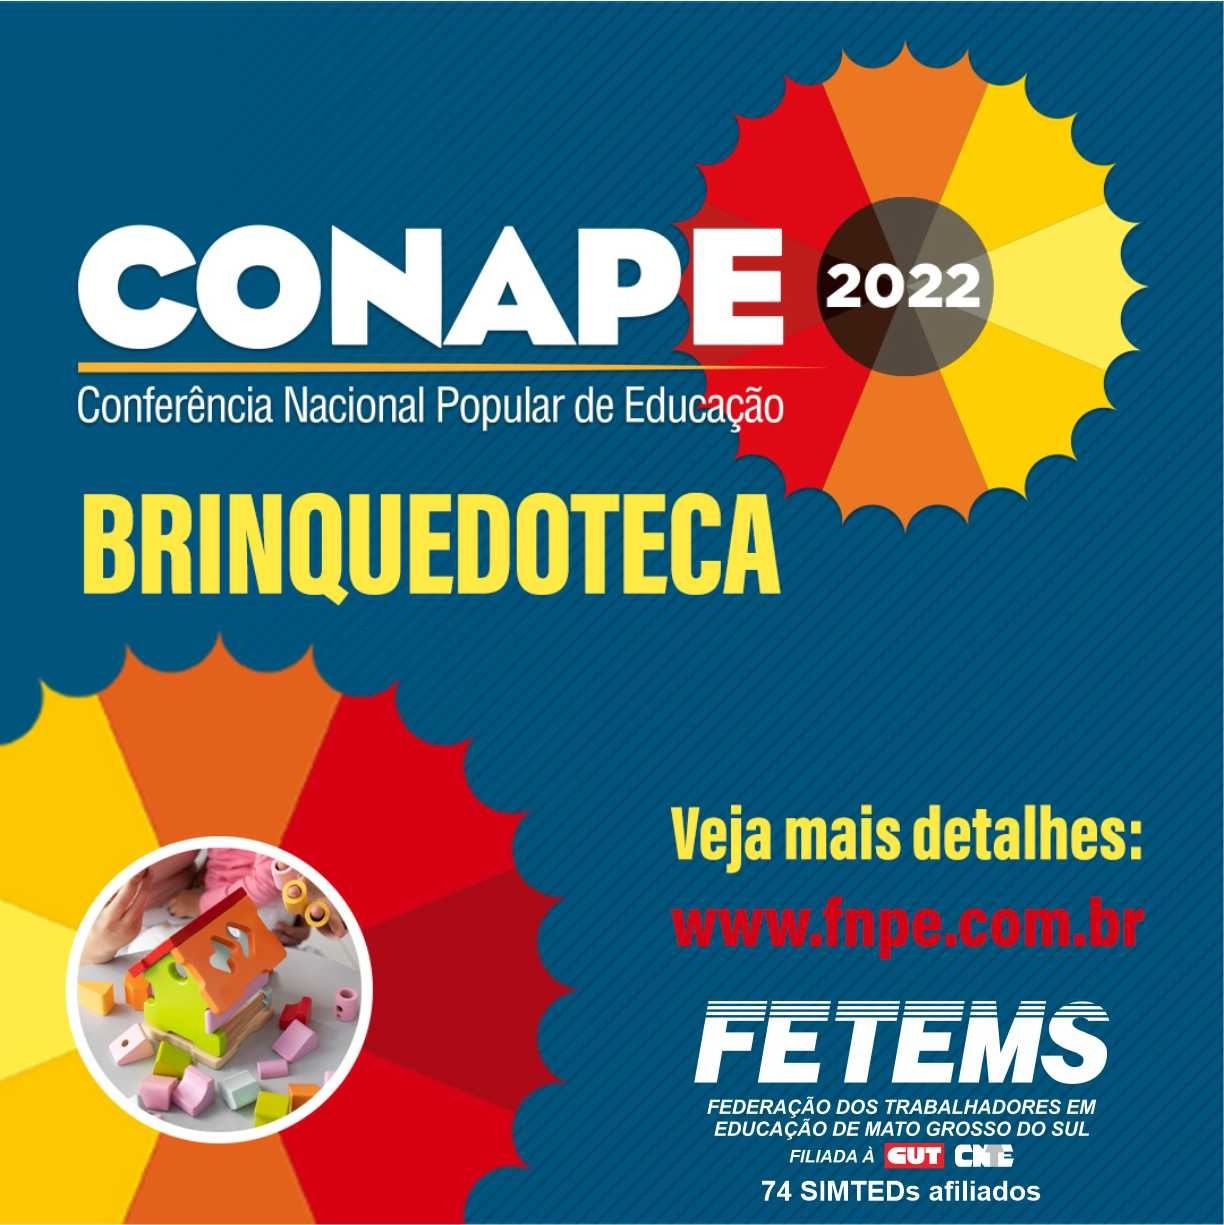 Com Brinquedoteca, trabalhadoras da educação ampliam participação no debate nacional, diz delegada do Conape